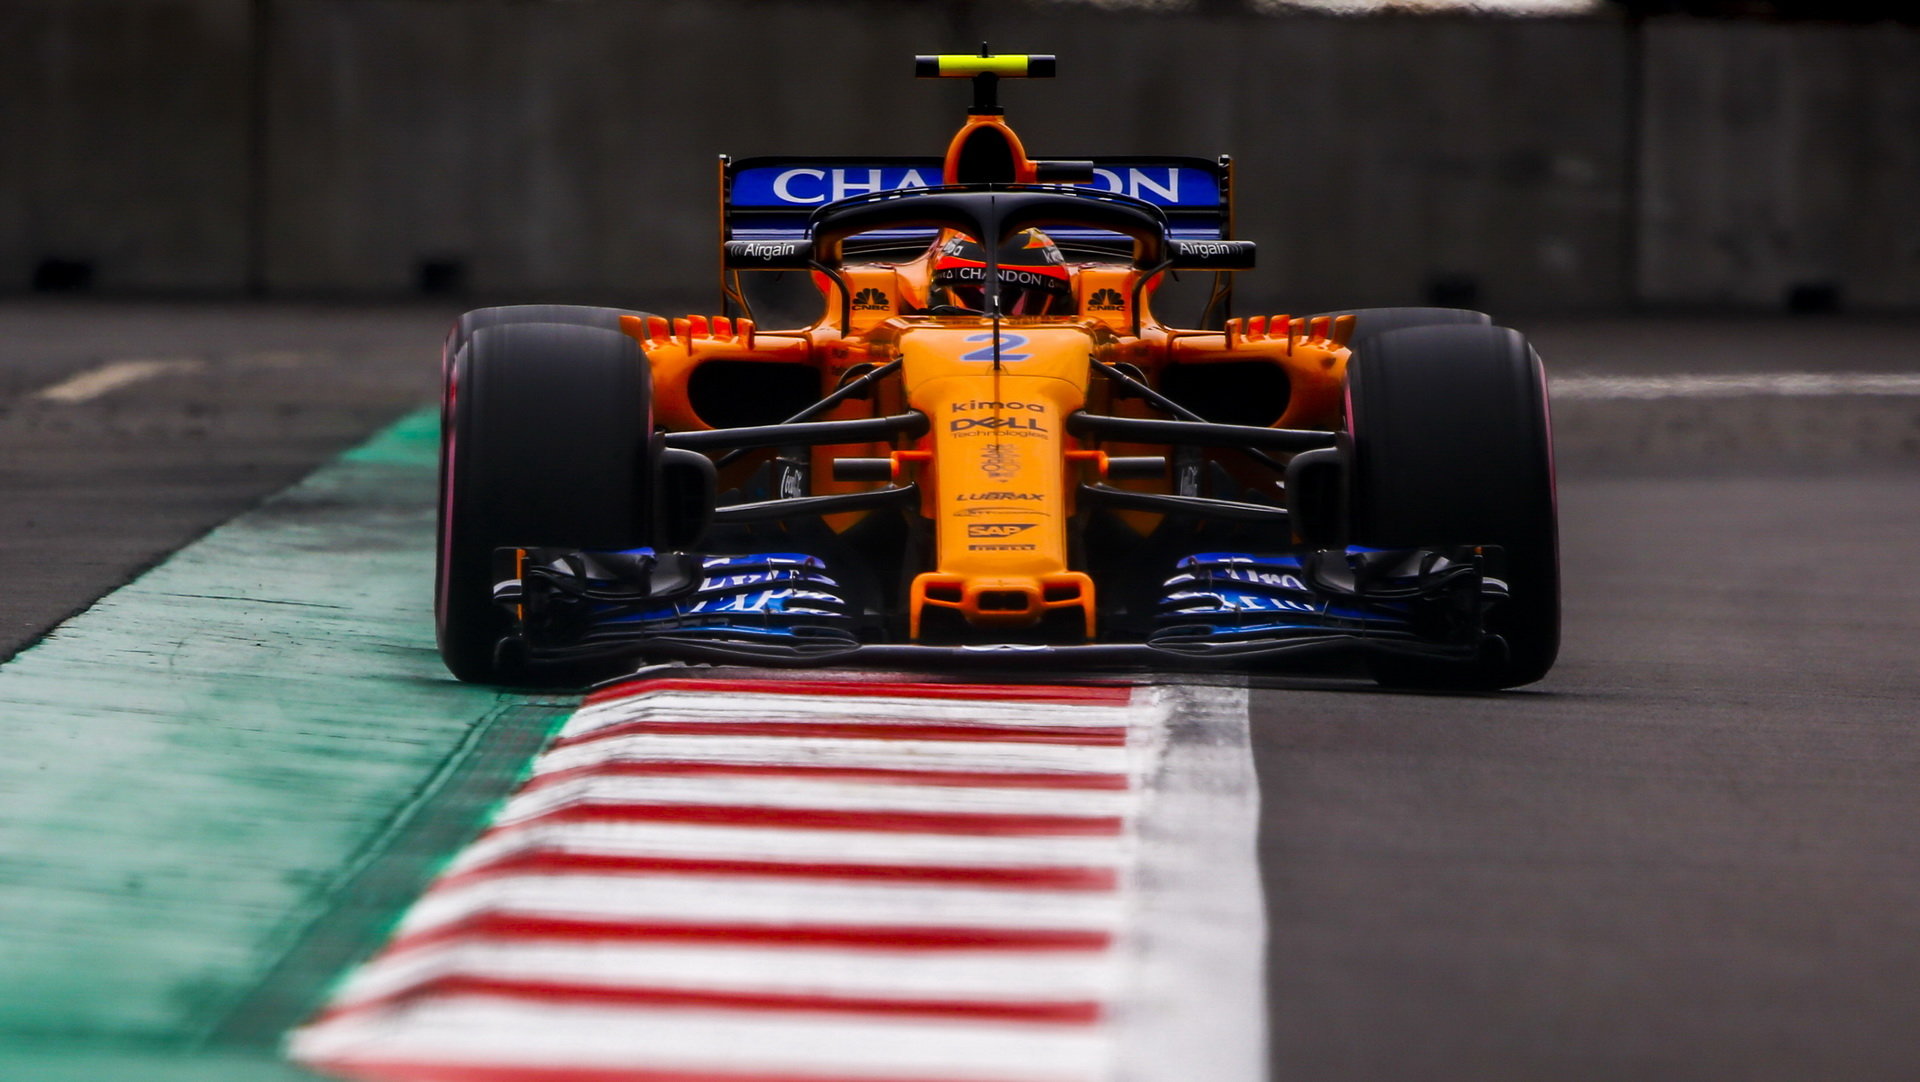 McLaren mění svou jezdeckou sestavu, místo Alonsa s Vandorneem za něj budou závodit Sainz s Norrisem